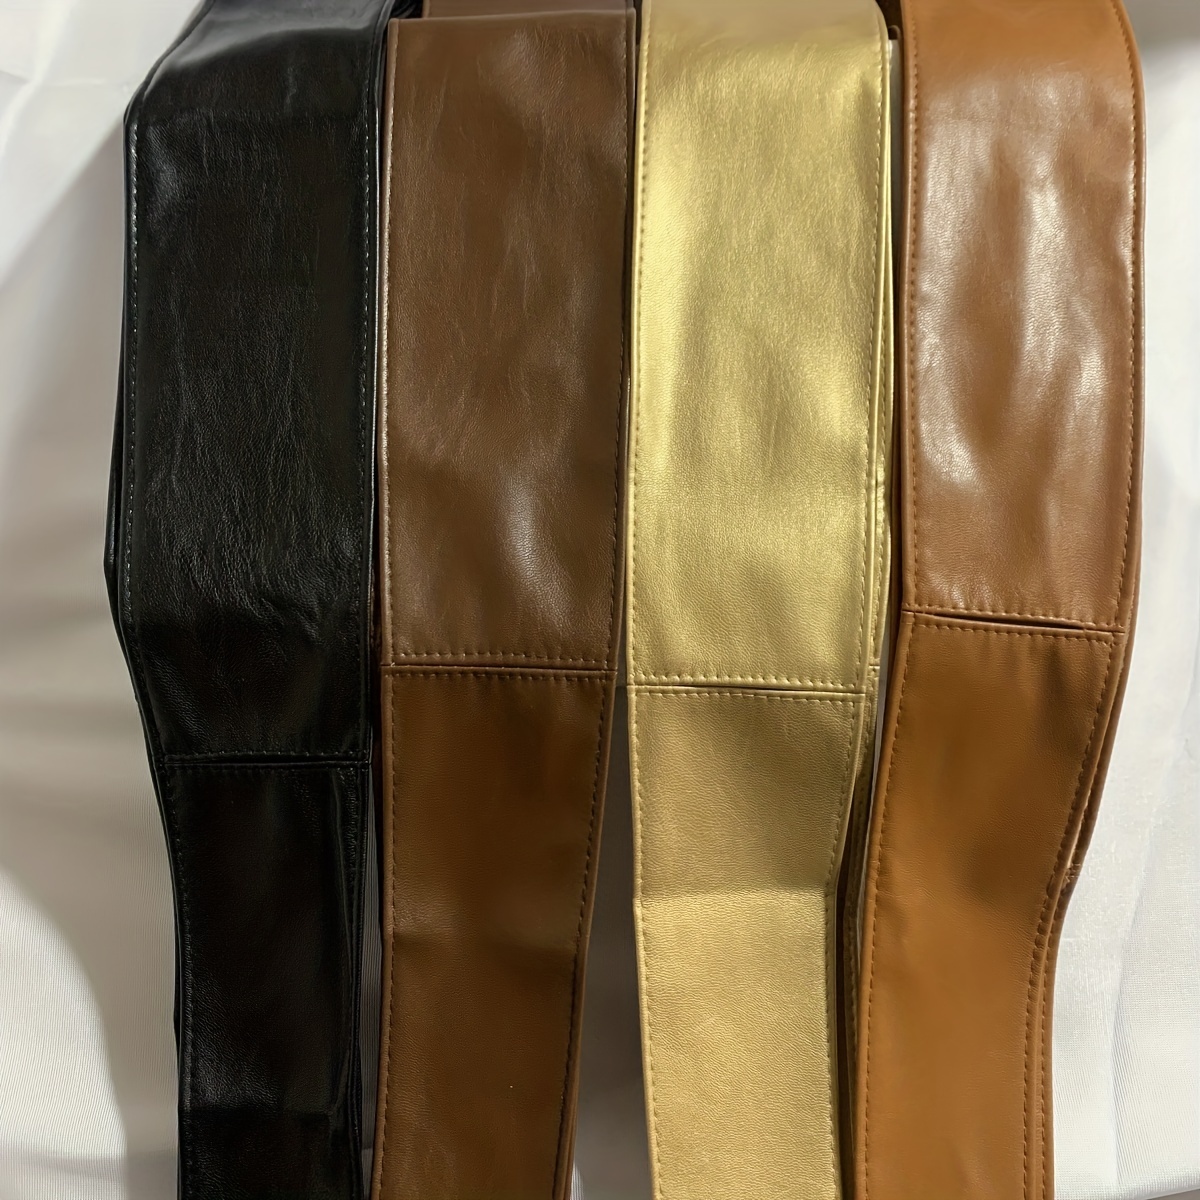 Bowknot Sash Belt Vintage Solid Color Pu Girdle Dress Belts Boho